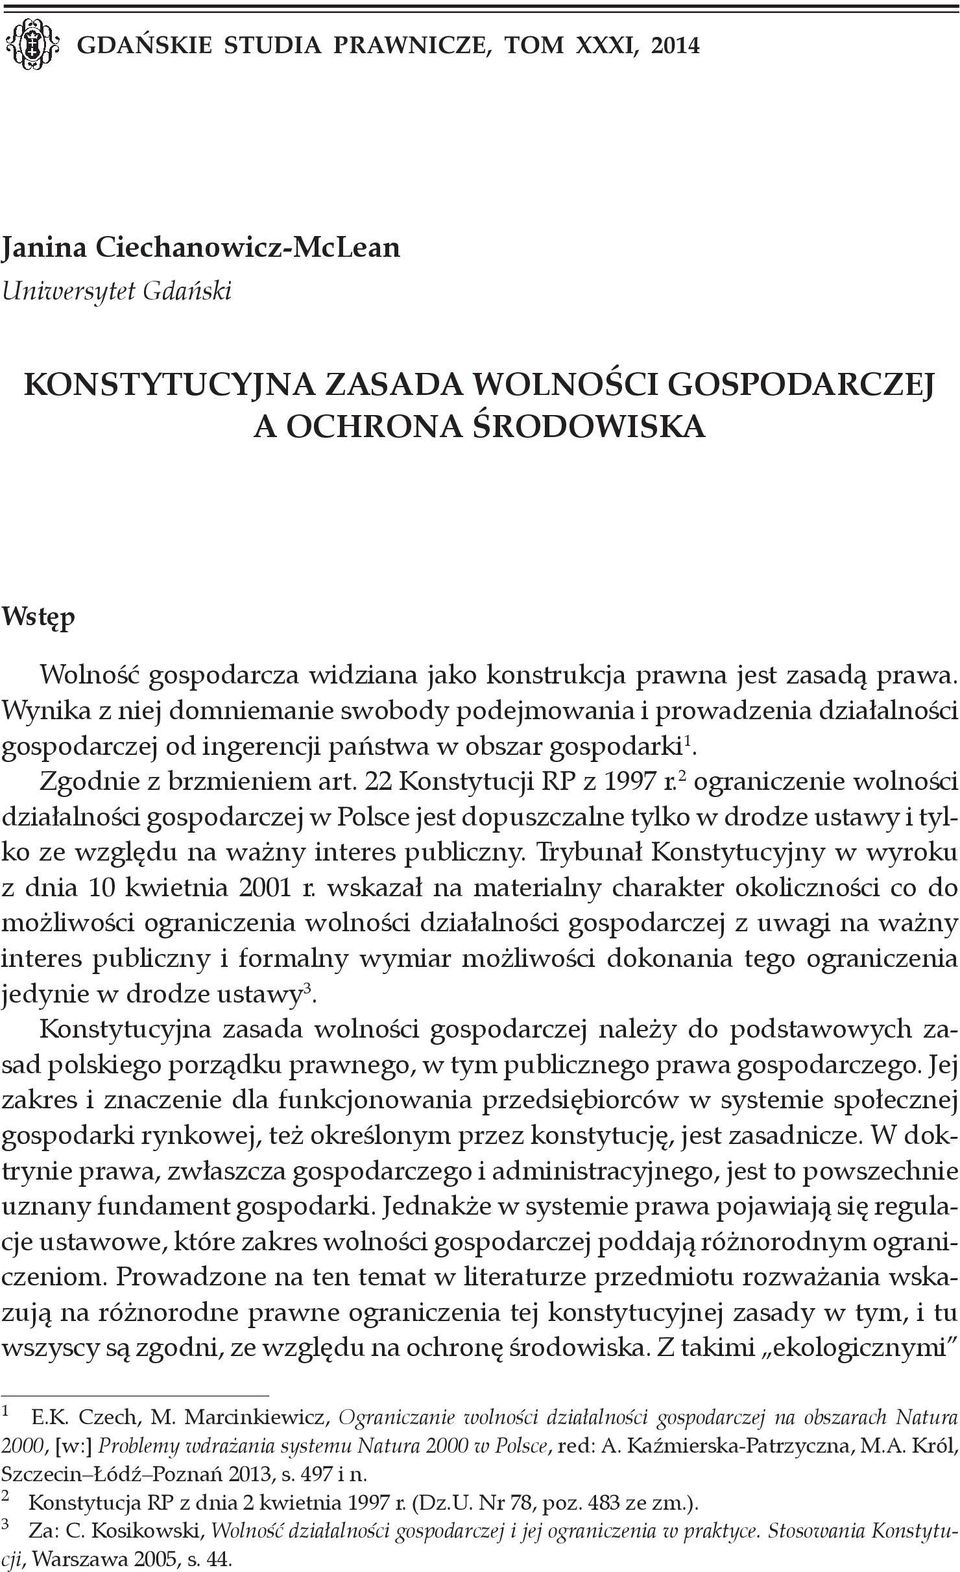 22 Konstytucji RP z 1997 r. 2 ograniczenie wolności działalności gospodarczej w Polsce jest dopuszczalne tylko w drodze ustawy i tylko ze względu na ważny interes publiczny.